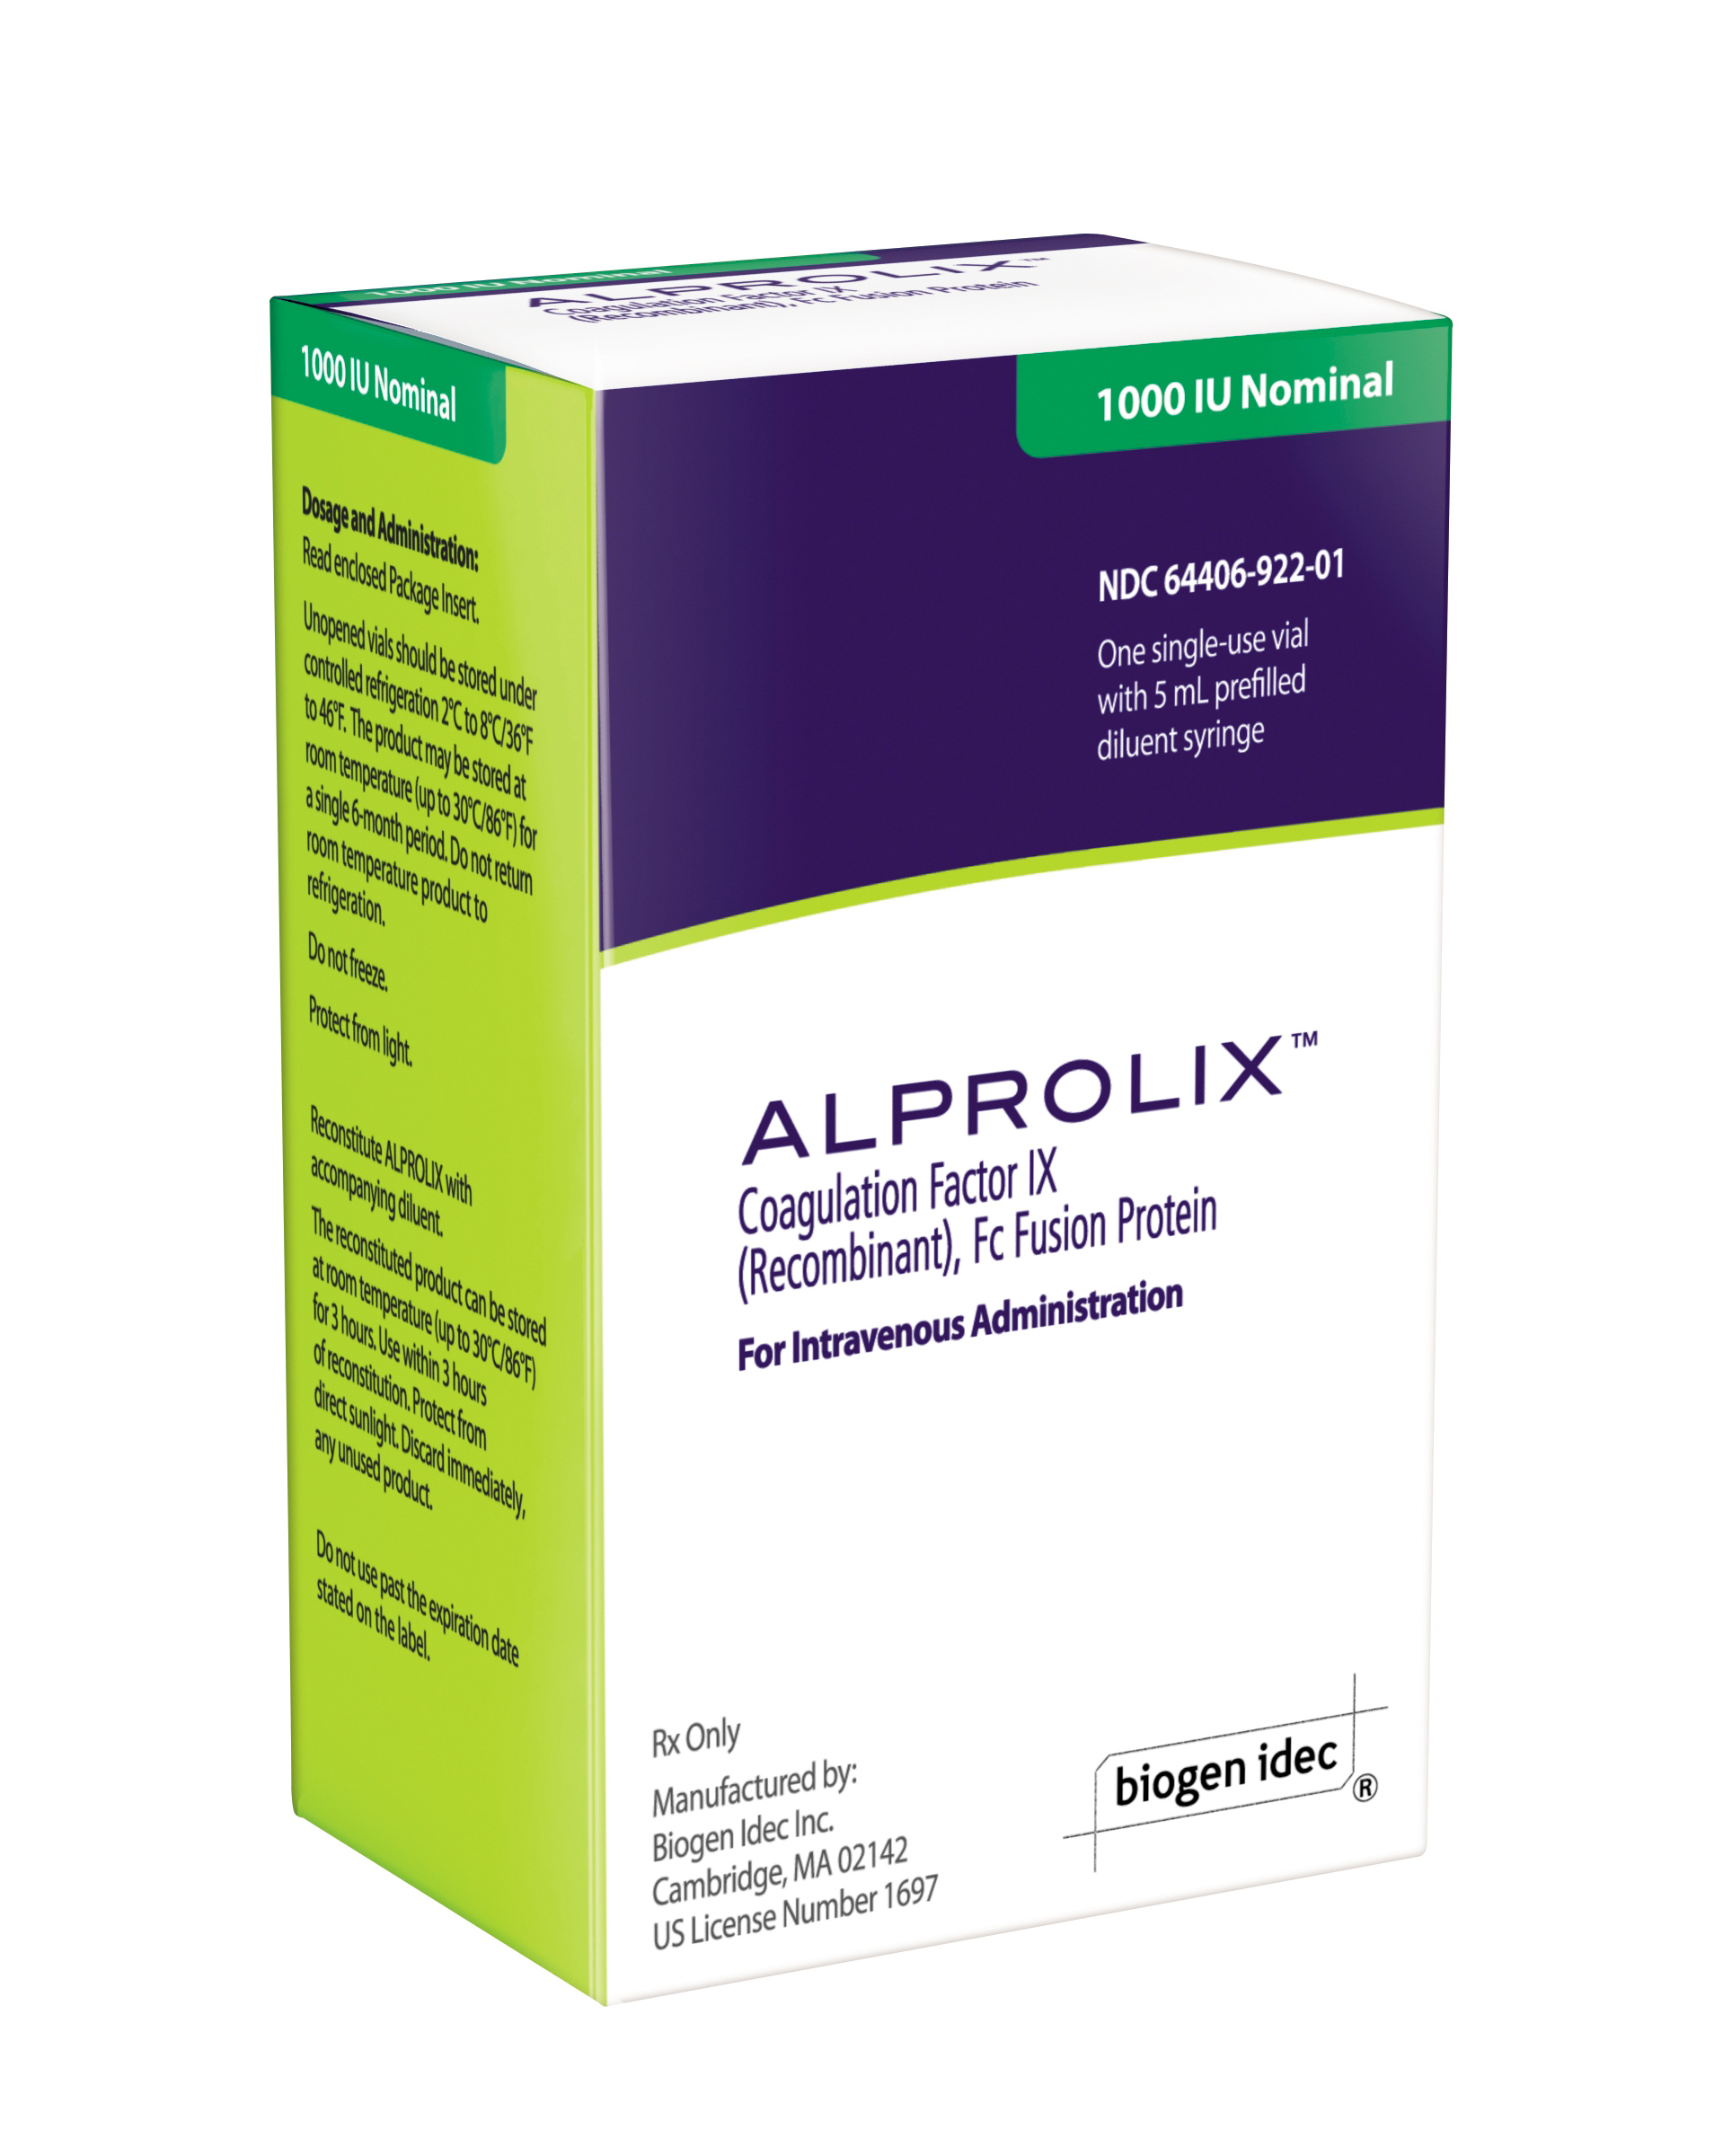 Alprolix-Coagulation-Factor-IX-300dpi_FINAL